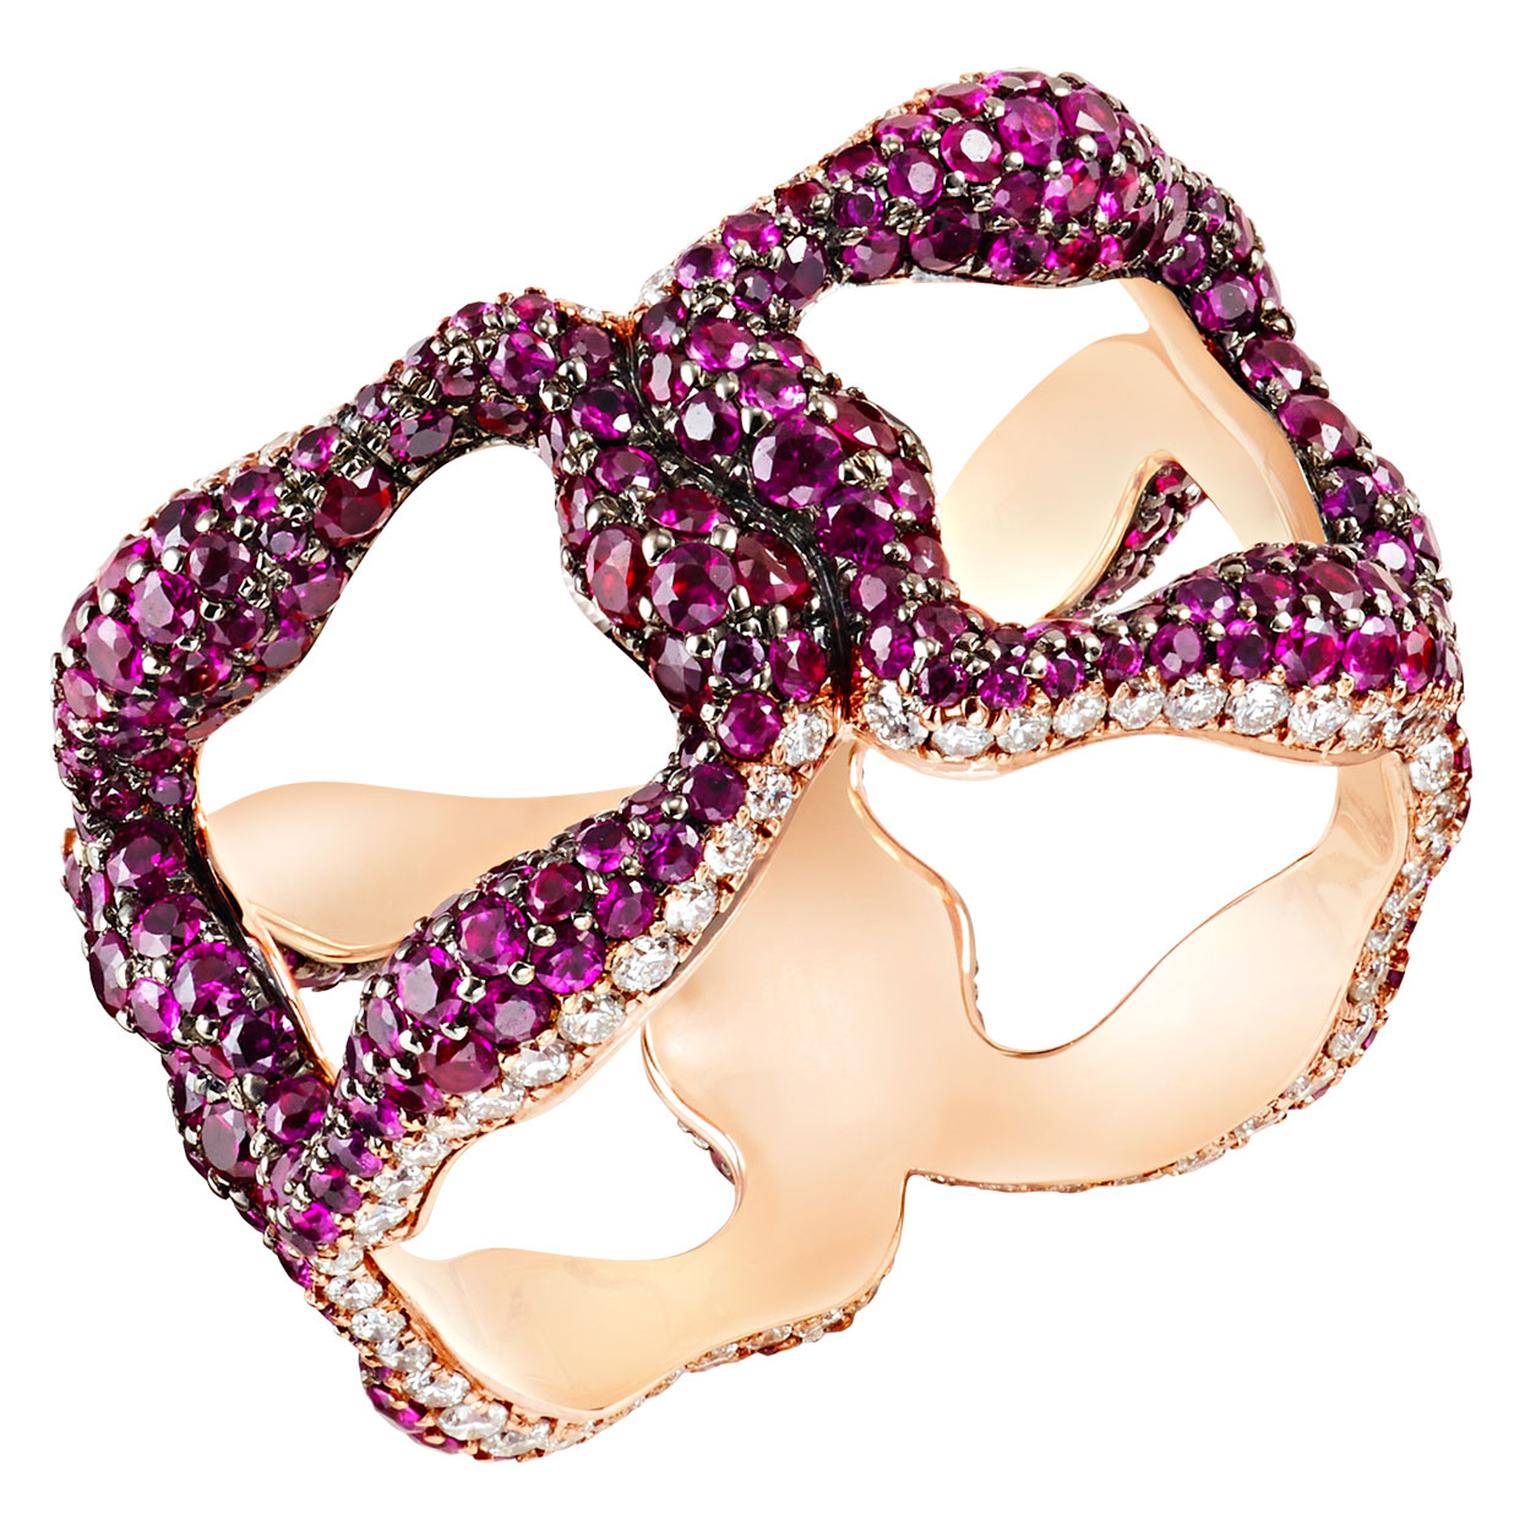 Fabergé Emotion Gypsy ruby ring